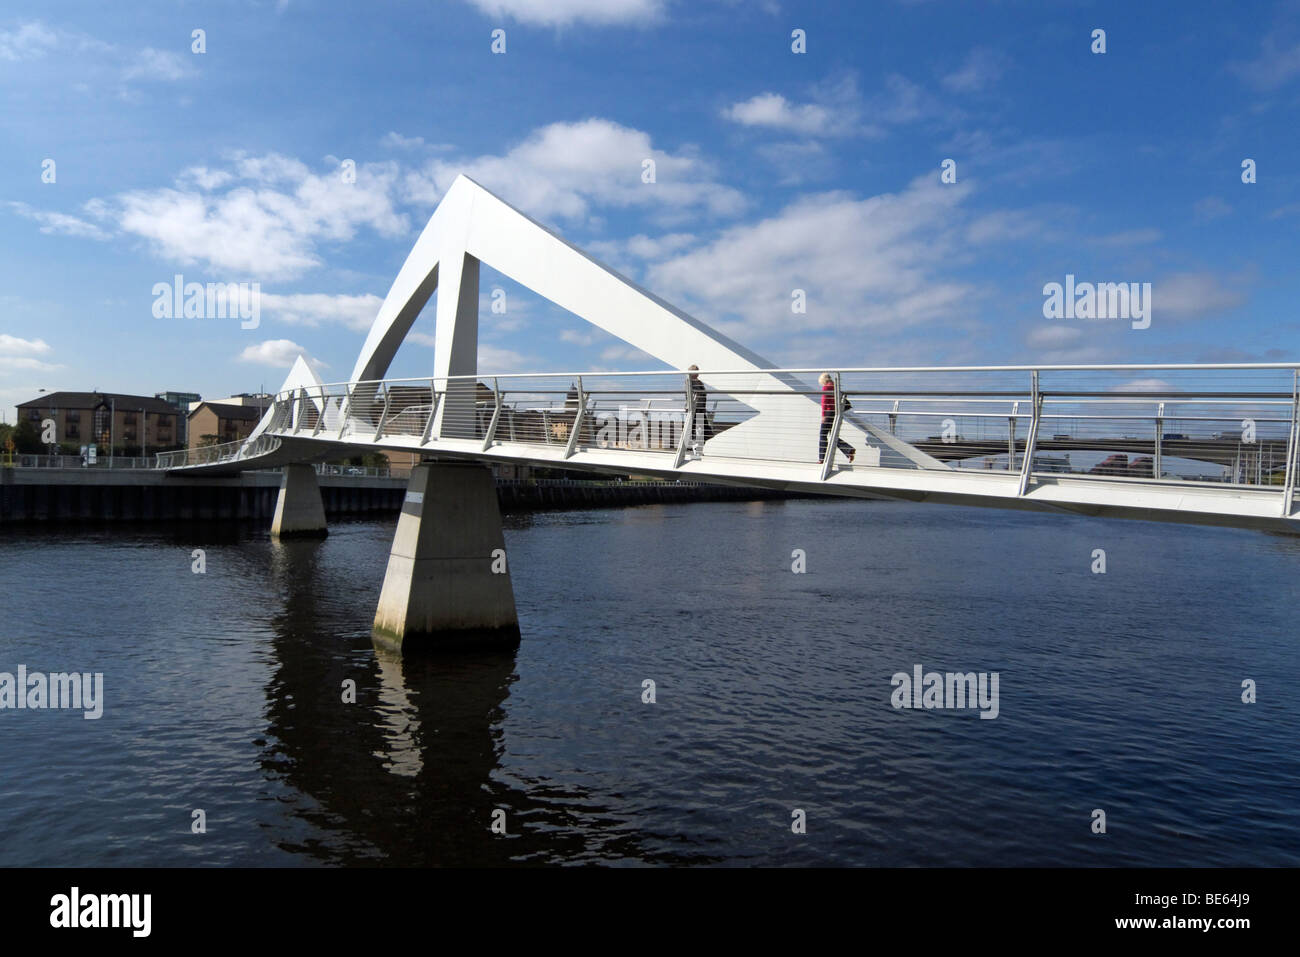 Die neue Fußgängerbrücke über den Fluss Clyde in Glasgow Schottland eröffnete 2009 auch liebevoll benannte "Squiggly Brücke" Stockfoto